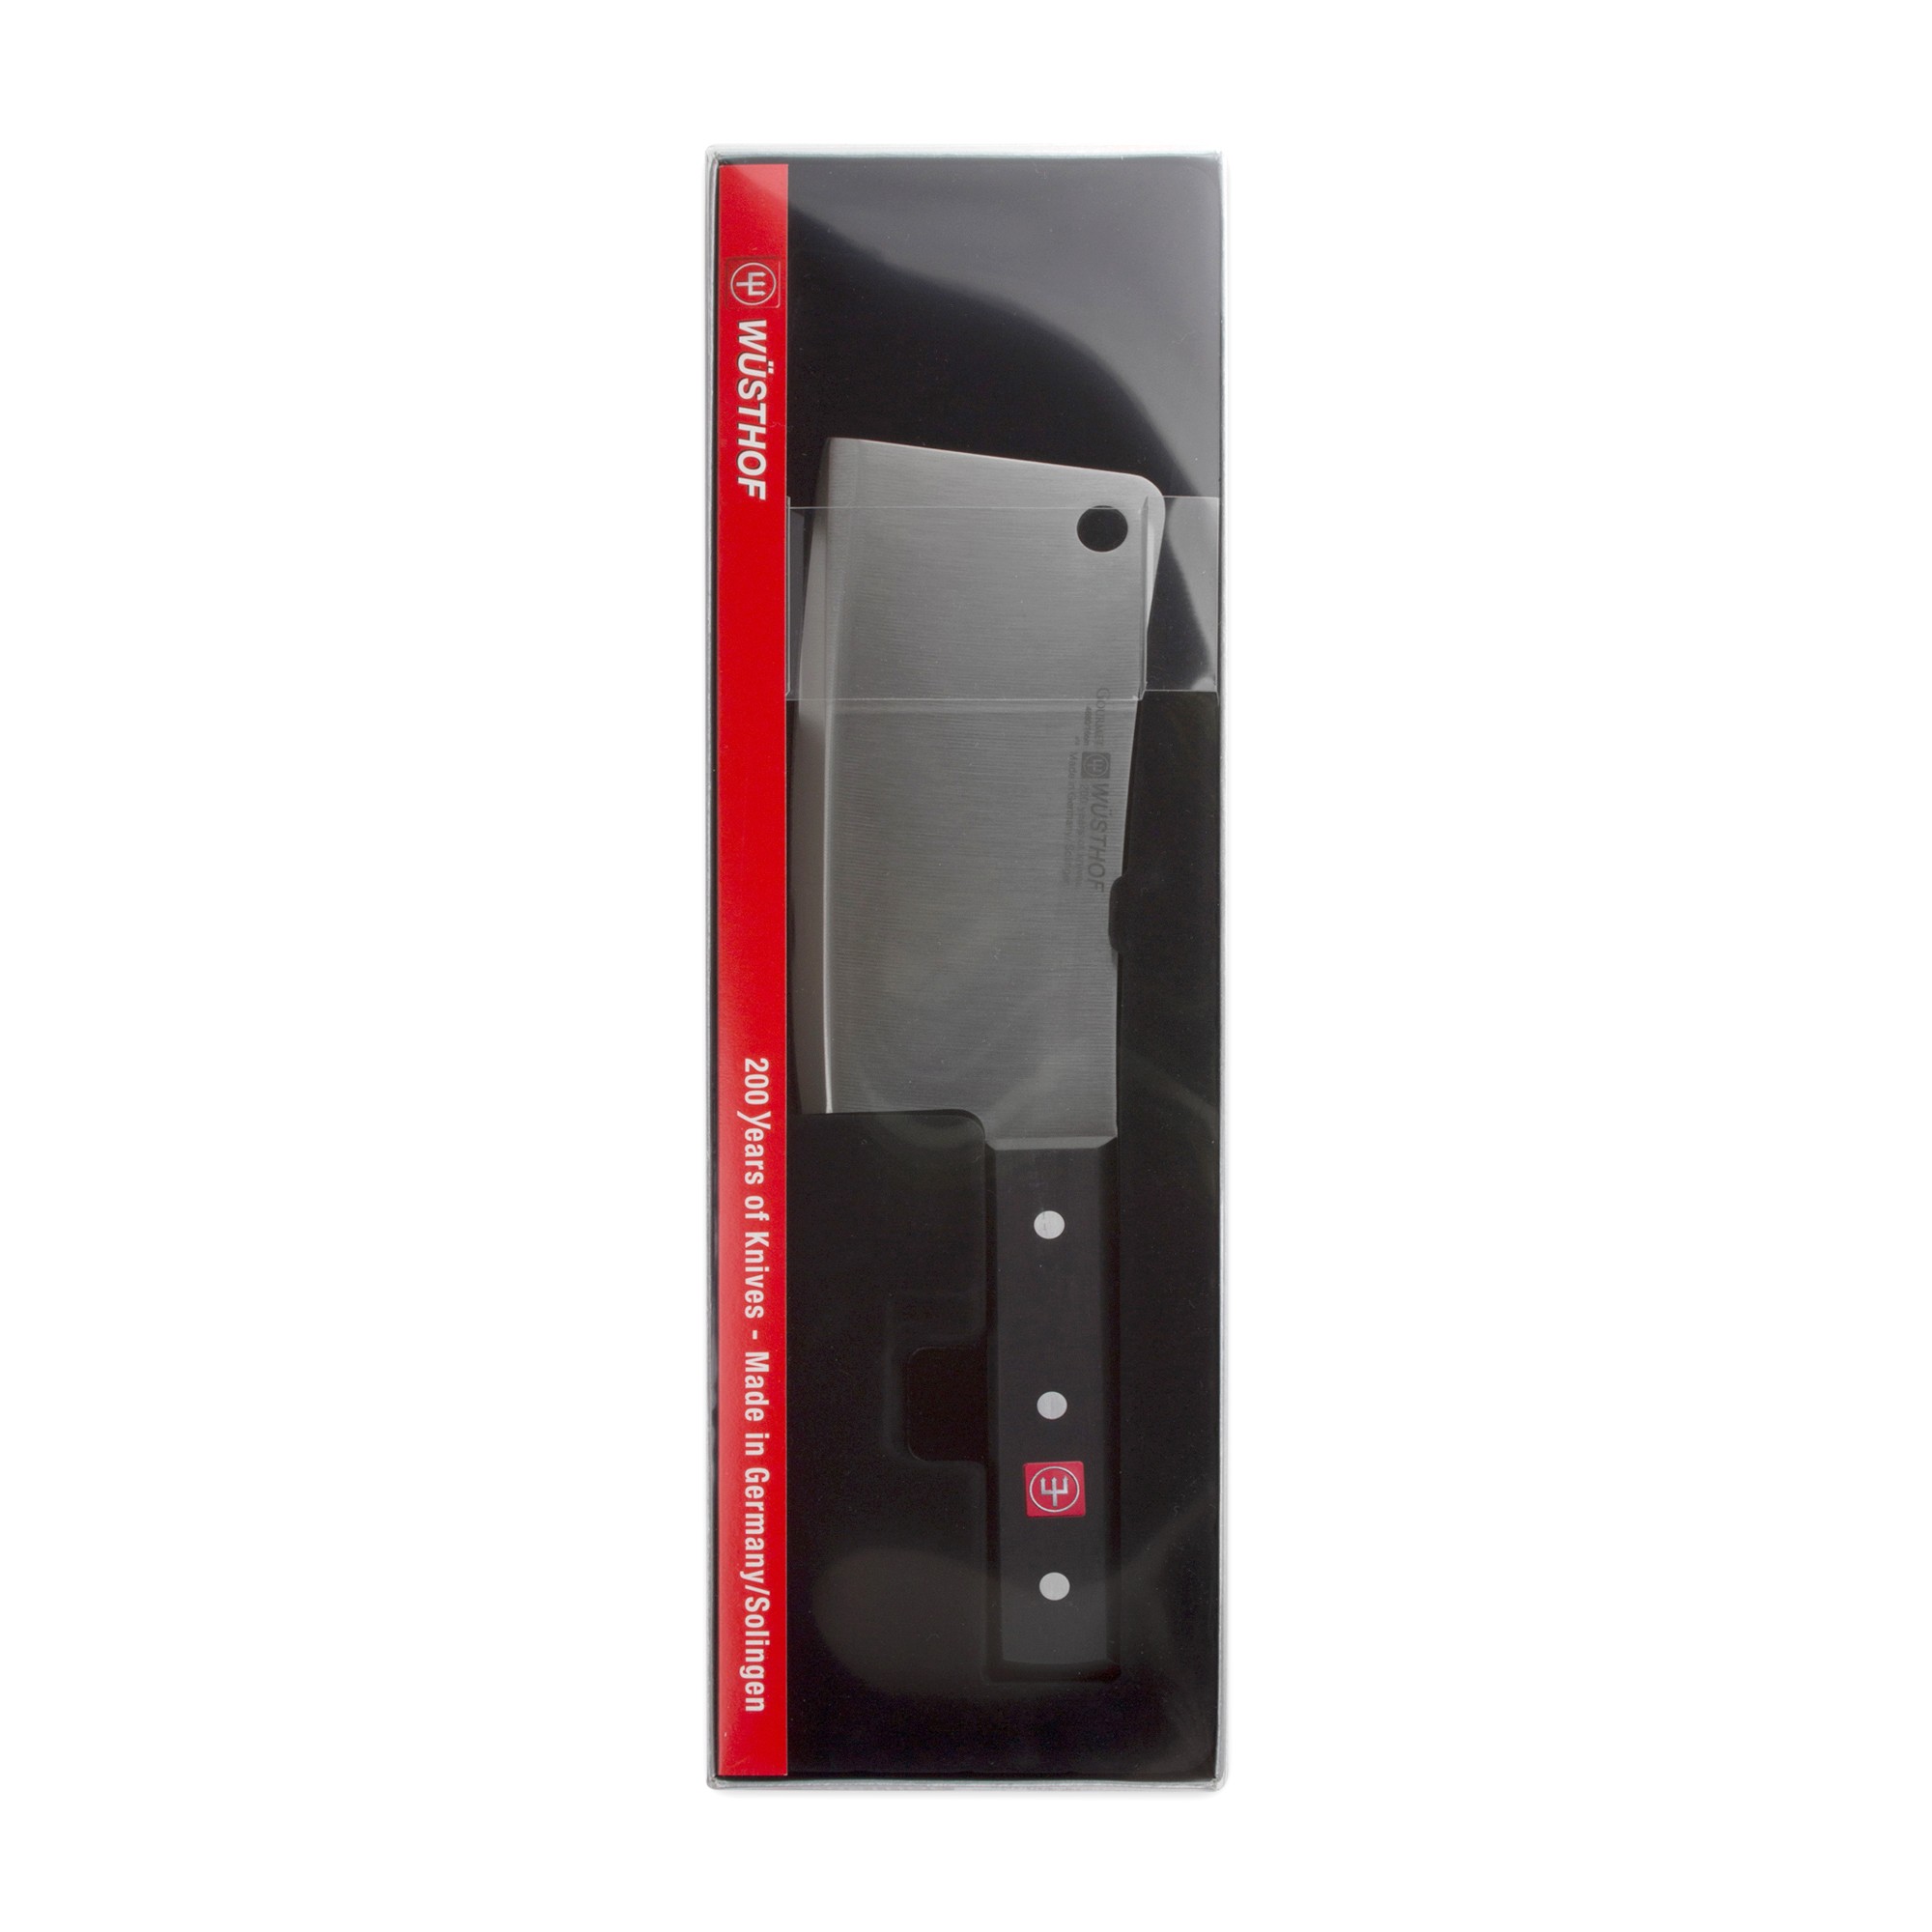 Нож для рубки мяса 16 см, 460 г, серия Professional tools, WUESTHOF, Золинген, Германия